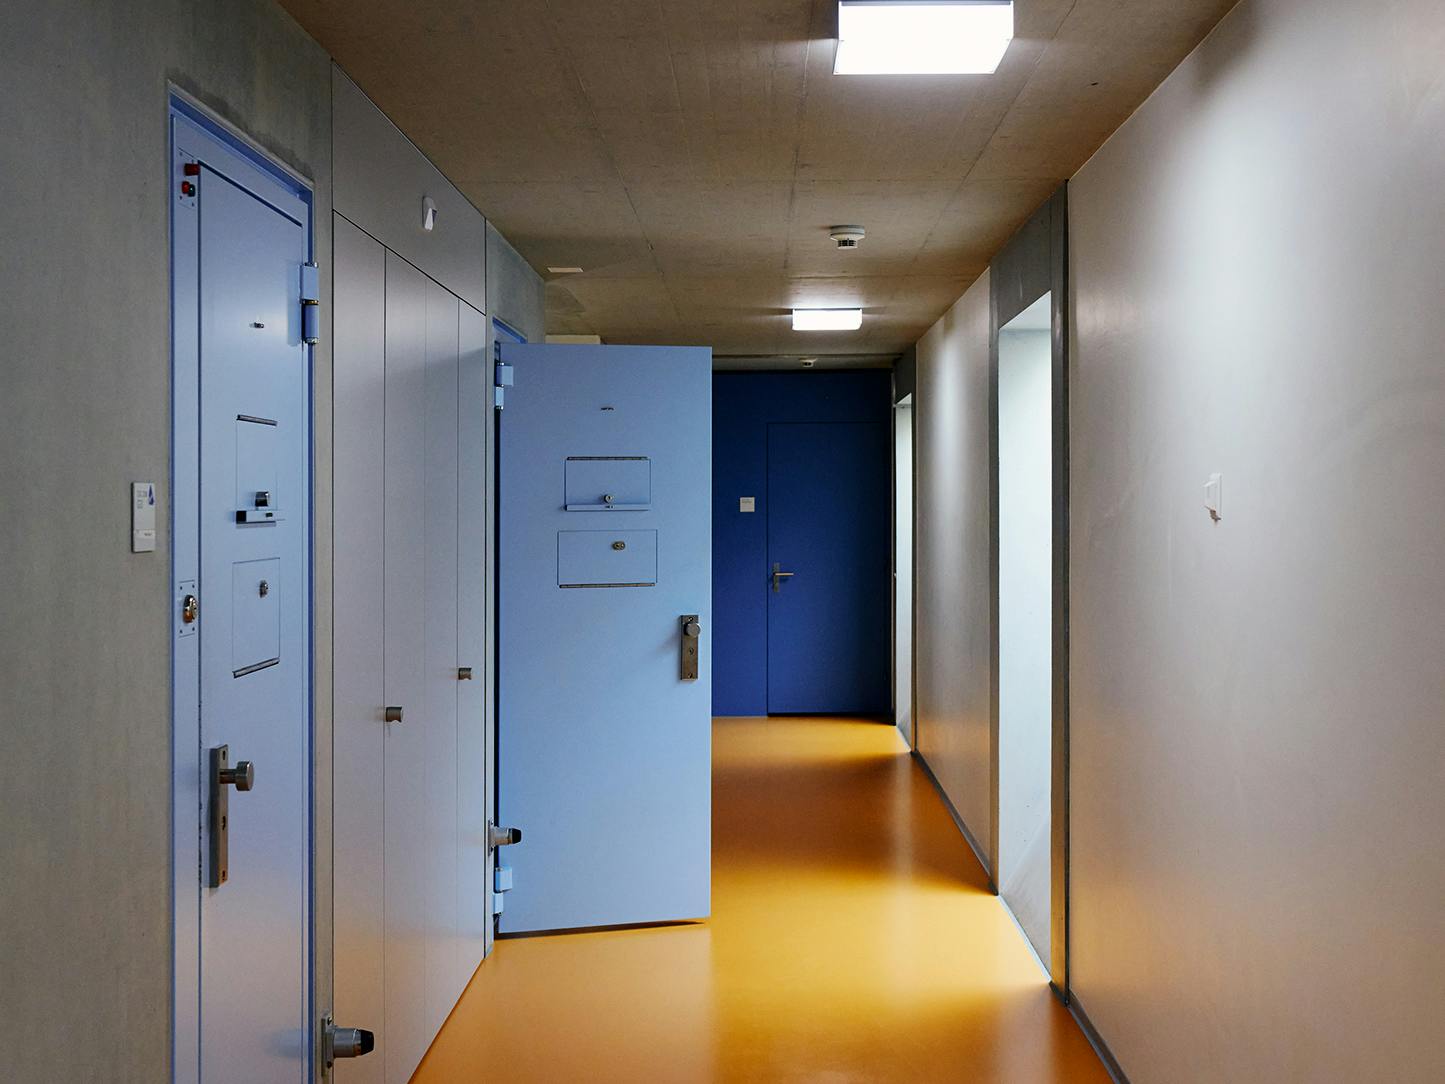 Gefängniskorridor mit gelben Boden und hellblauen Türen.